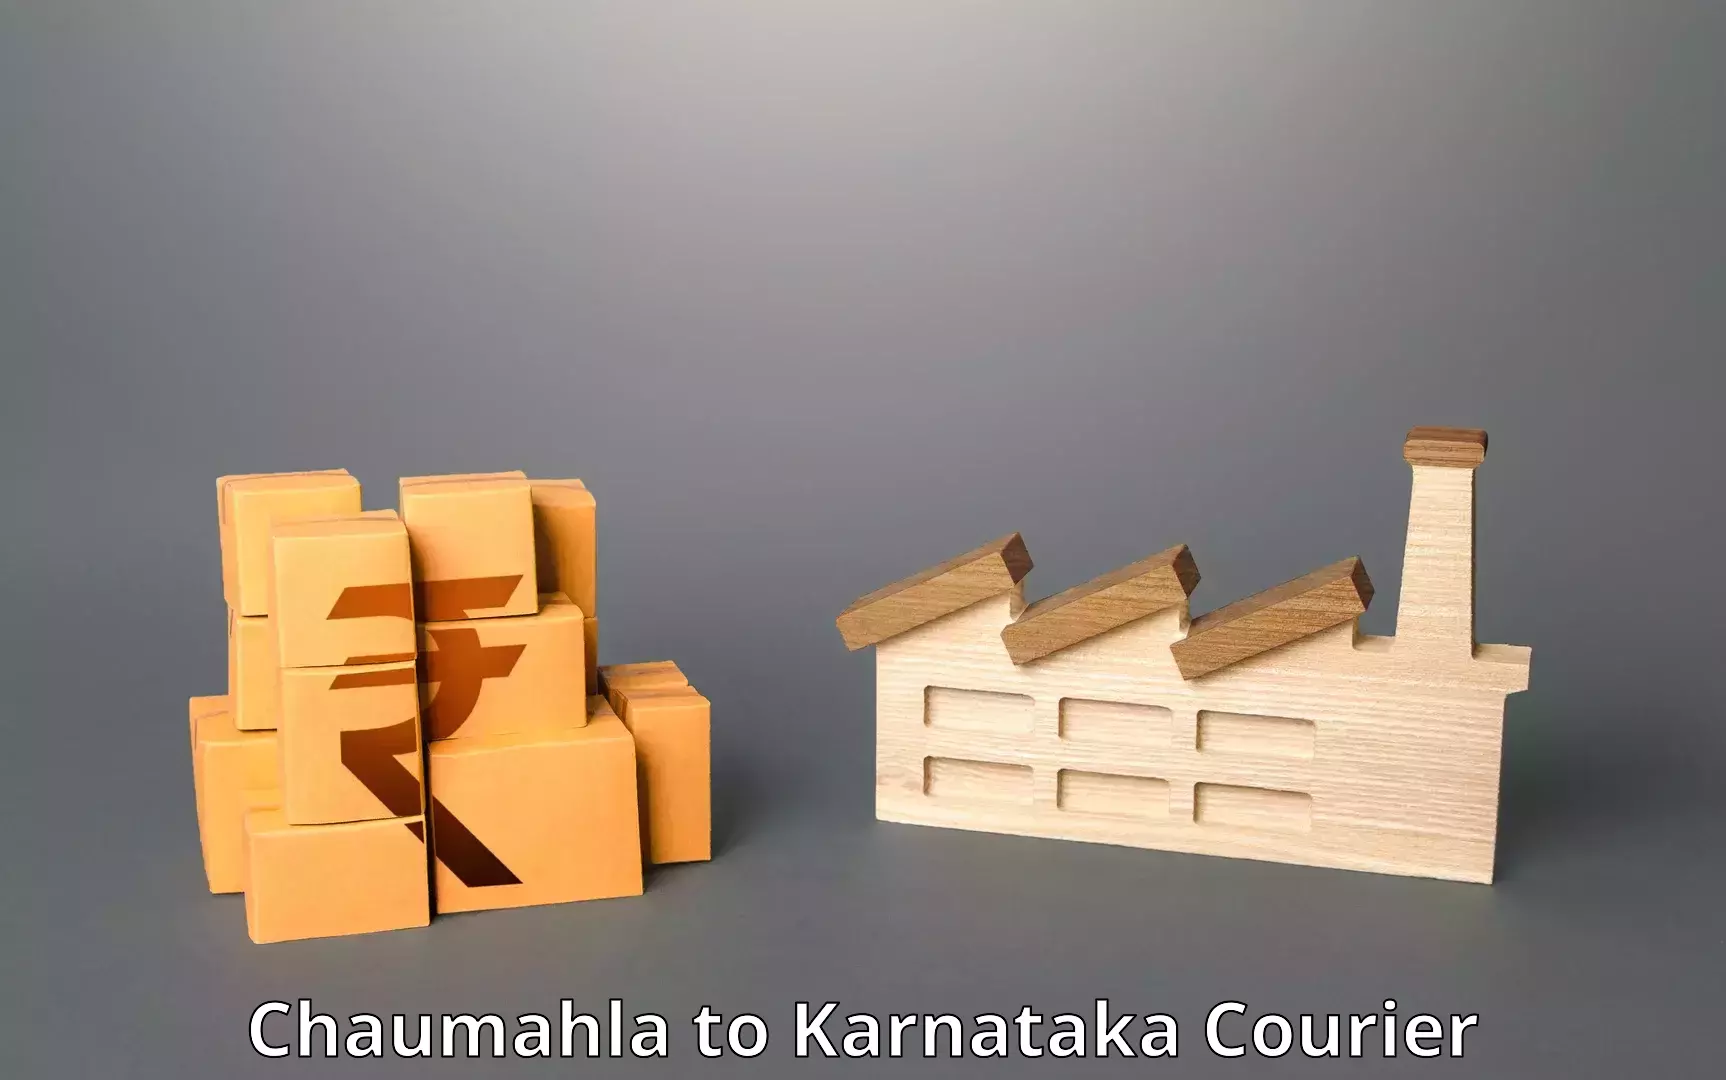 Comprehensive shipping network Chaumahla to Karnataka